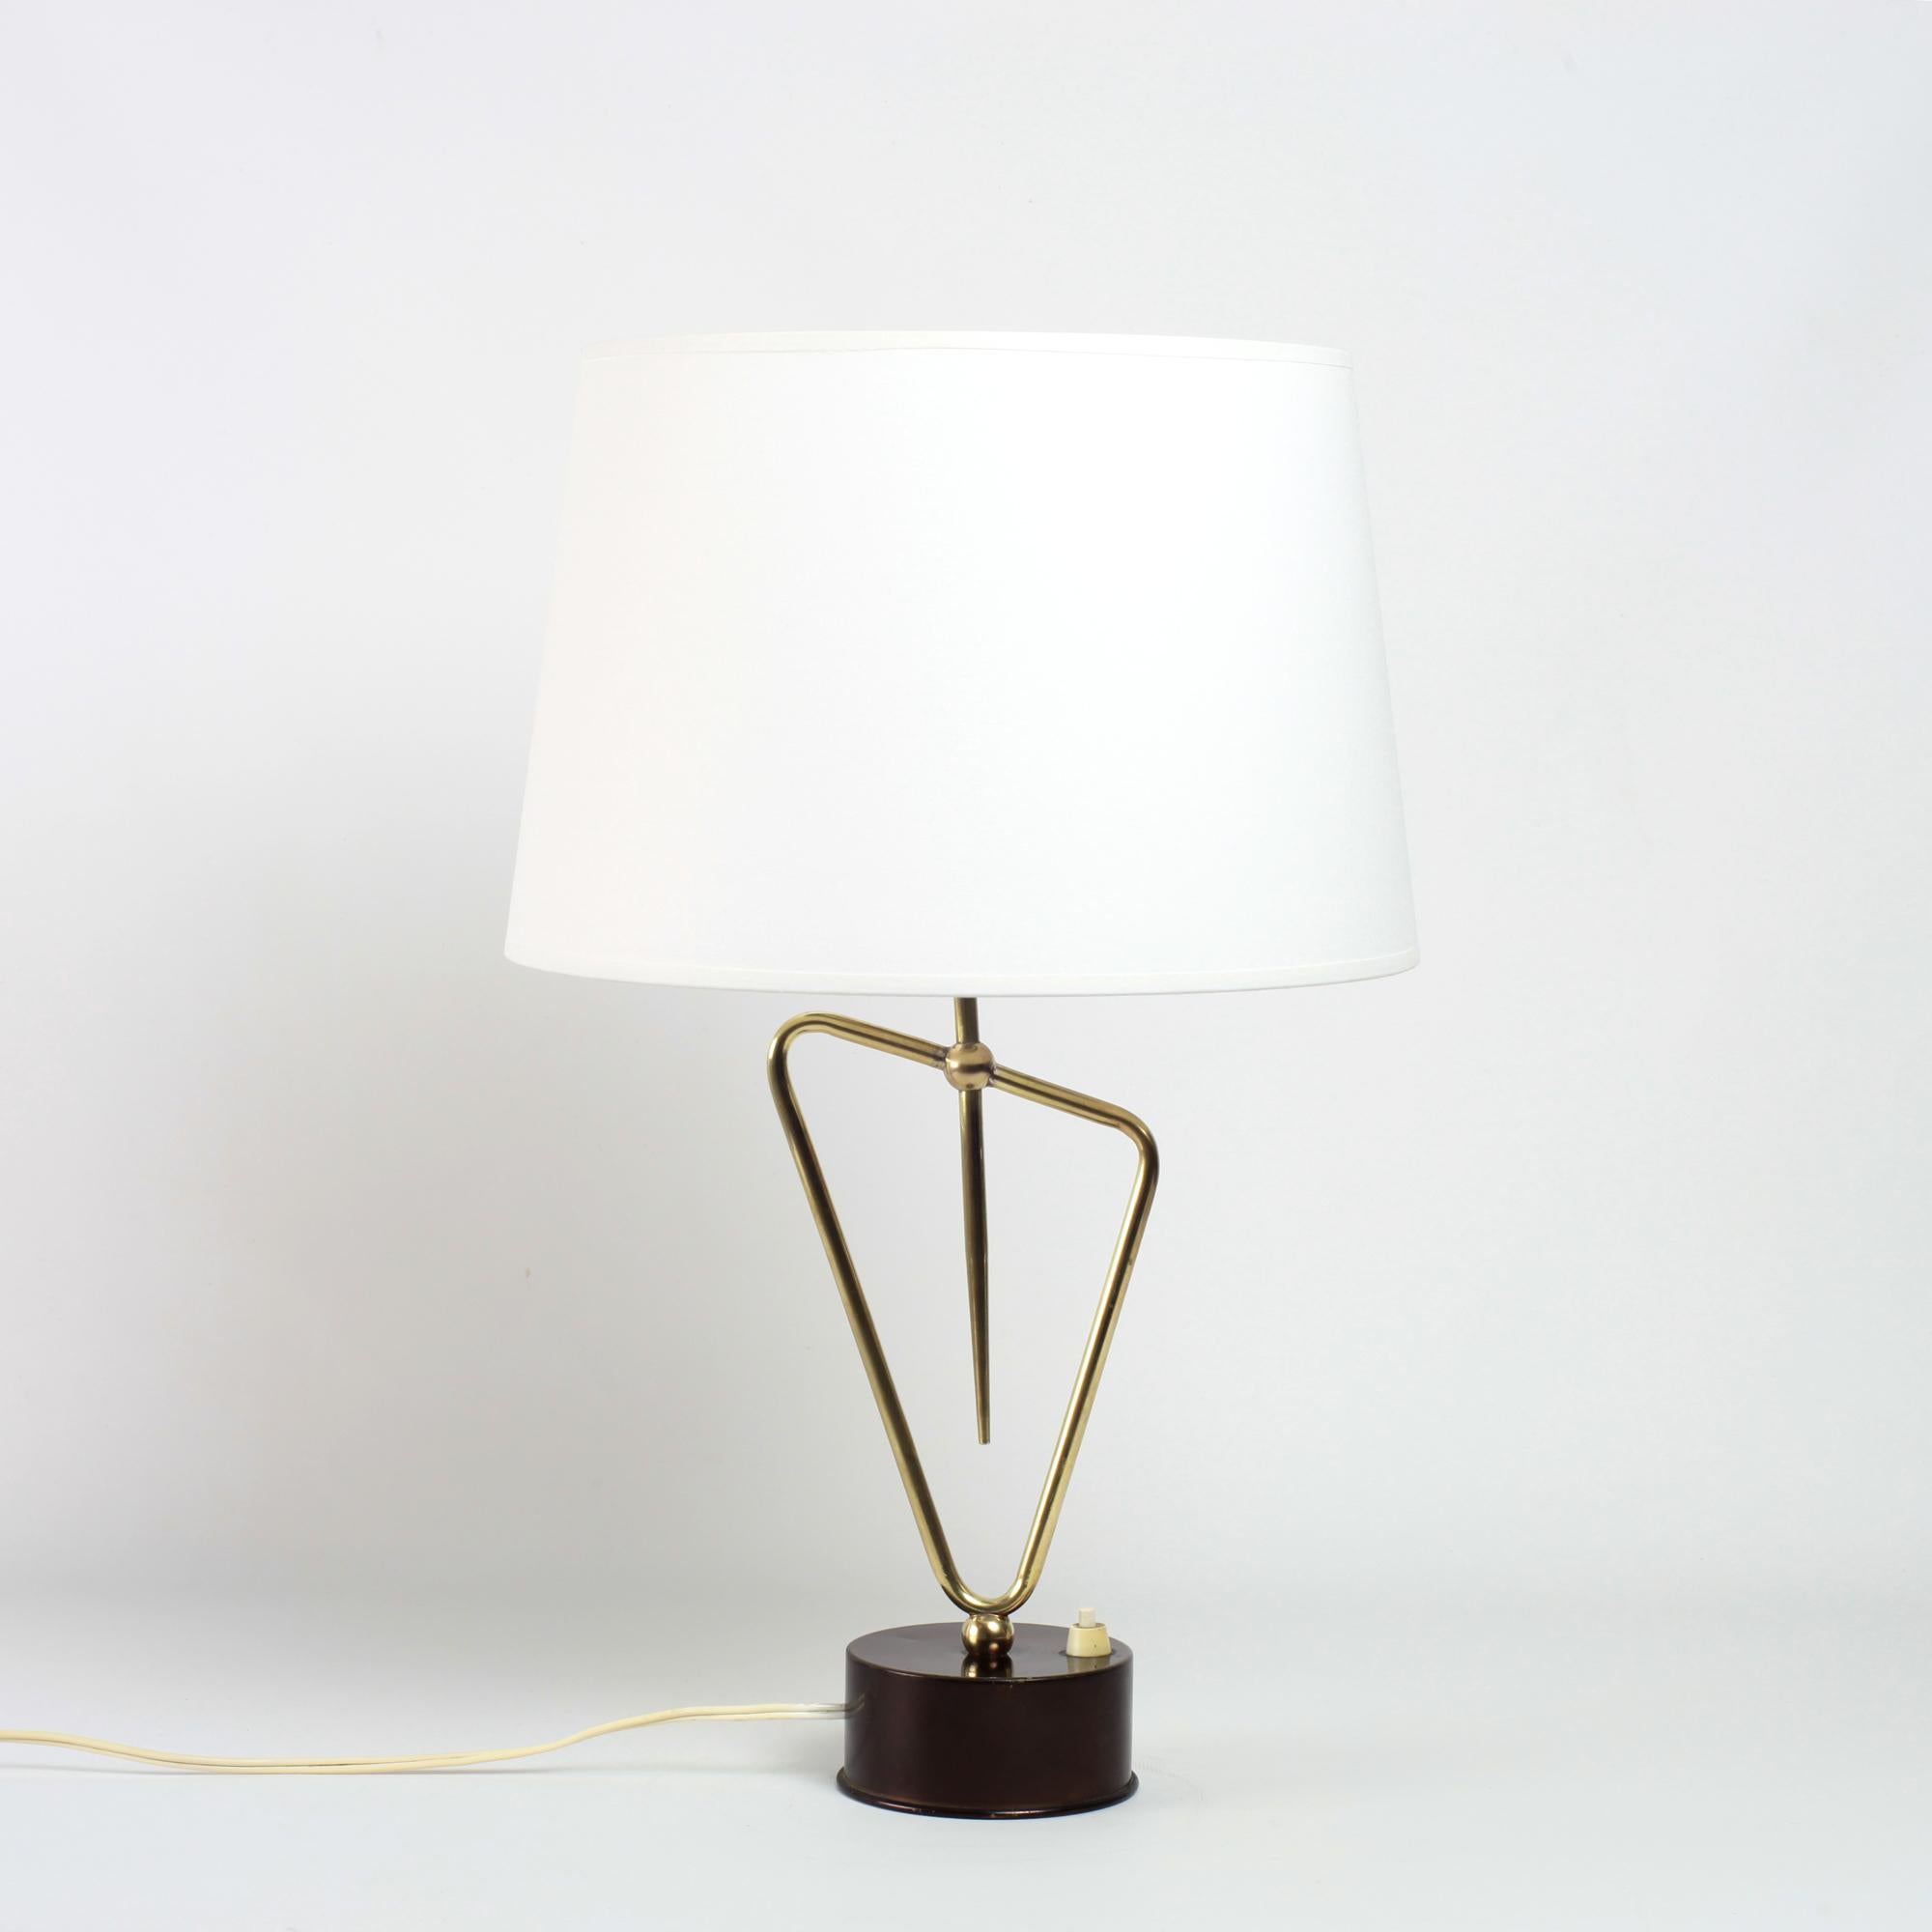 Rare lampe de table en laiton, fabriquée en France vers 1930.
Cette élégante lampe repose sur un pied conique, supportant une figure géométrique en laiton.
Une belle addition à votre espace de vie.
Les dimensions indiquées ne comprennent pas